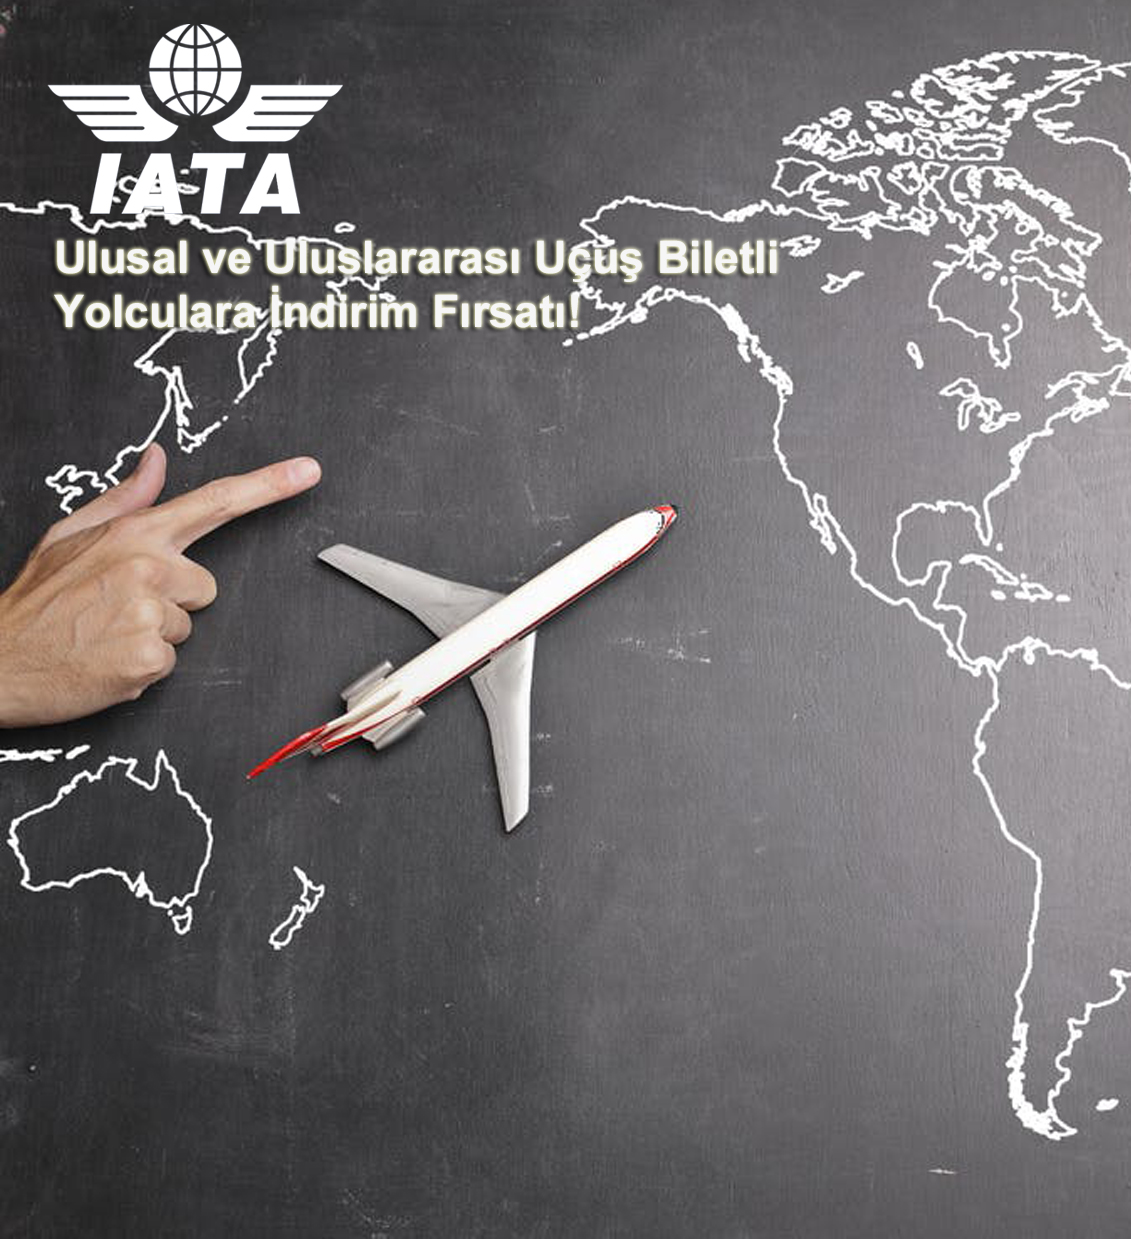 Nationale und internationale Flugtickets Rabattmöglichkeit für Passagiere!